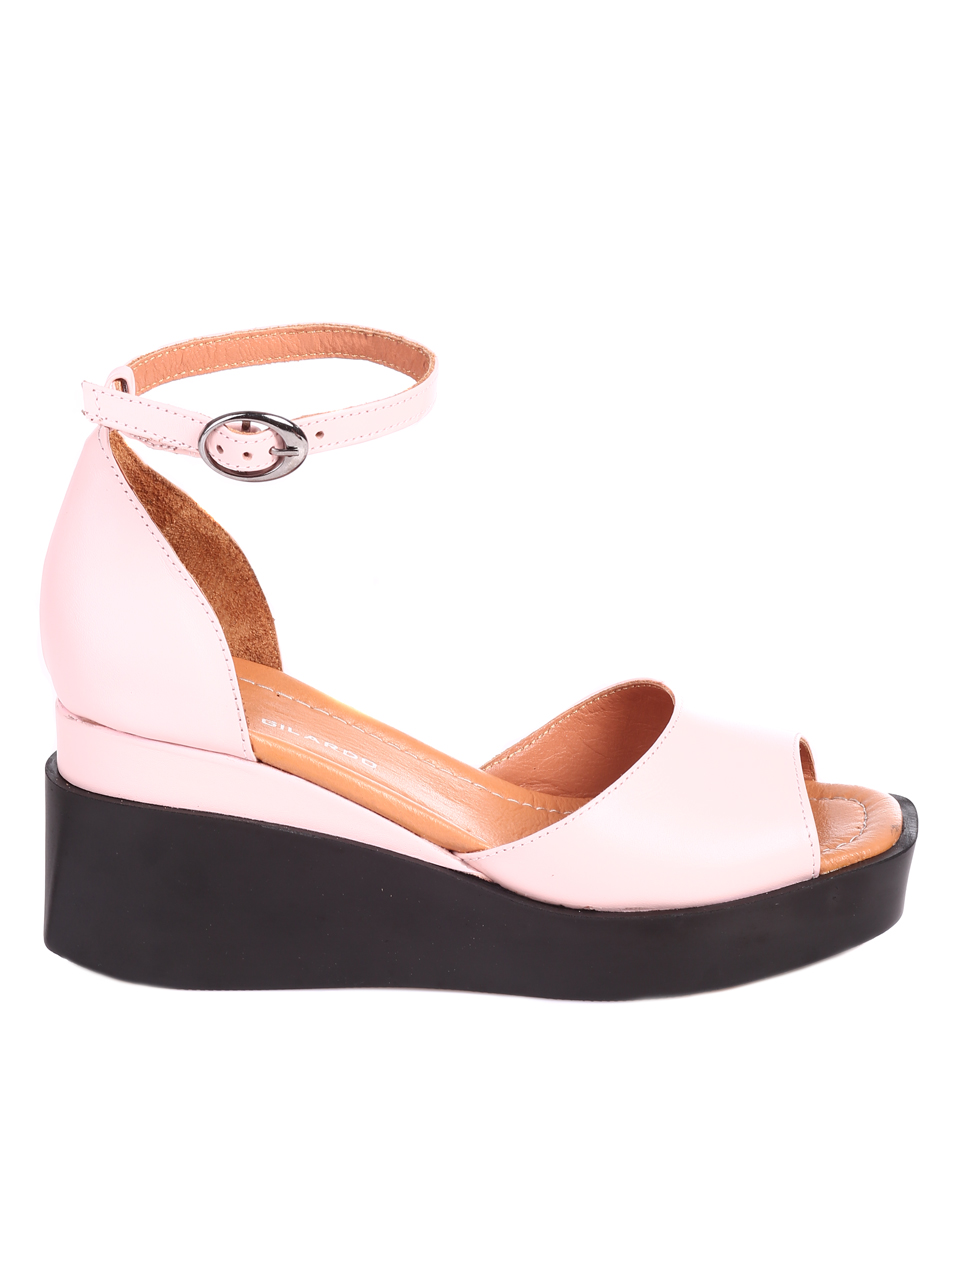 Ежедневни дамски сандали на платформа от естествена кожа 4AT-22339 beige/pink